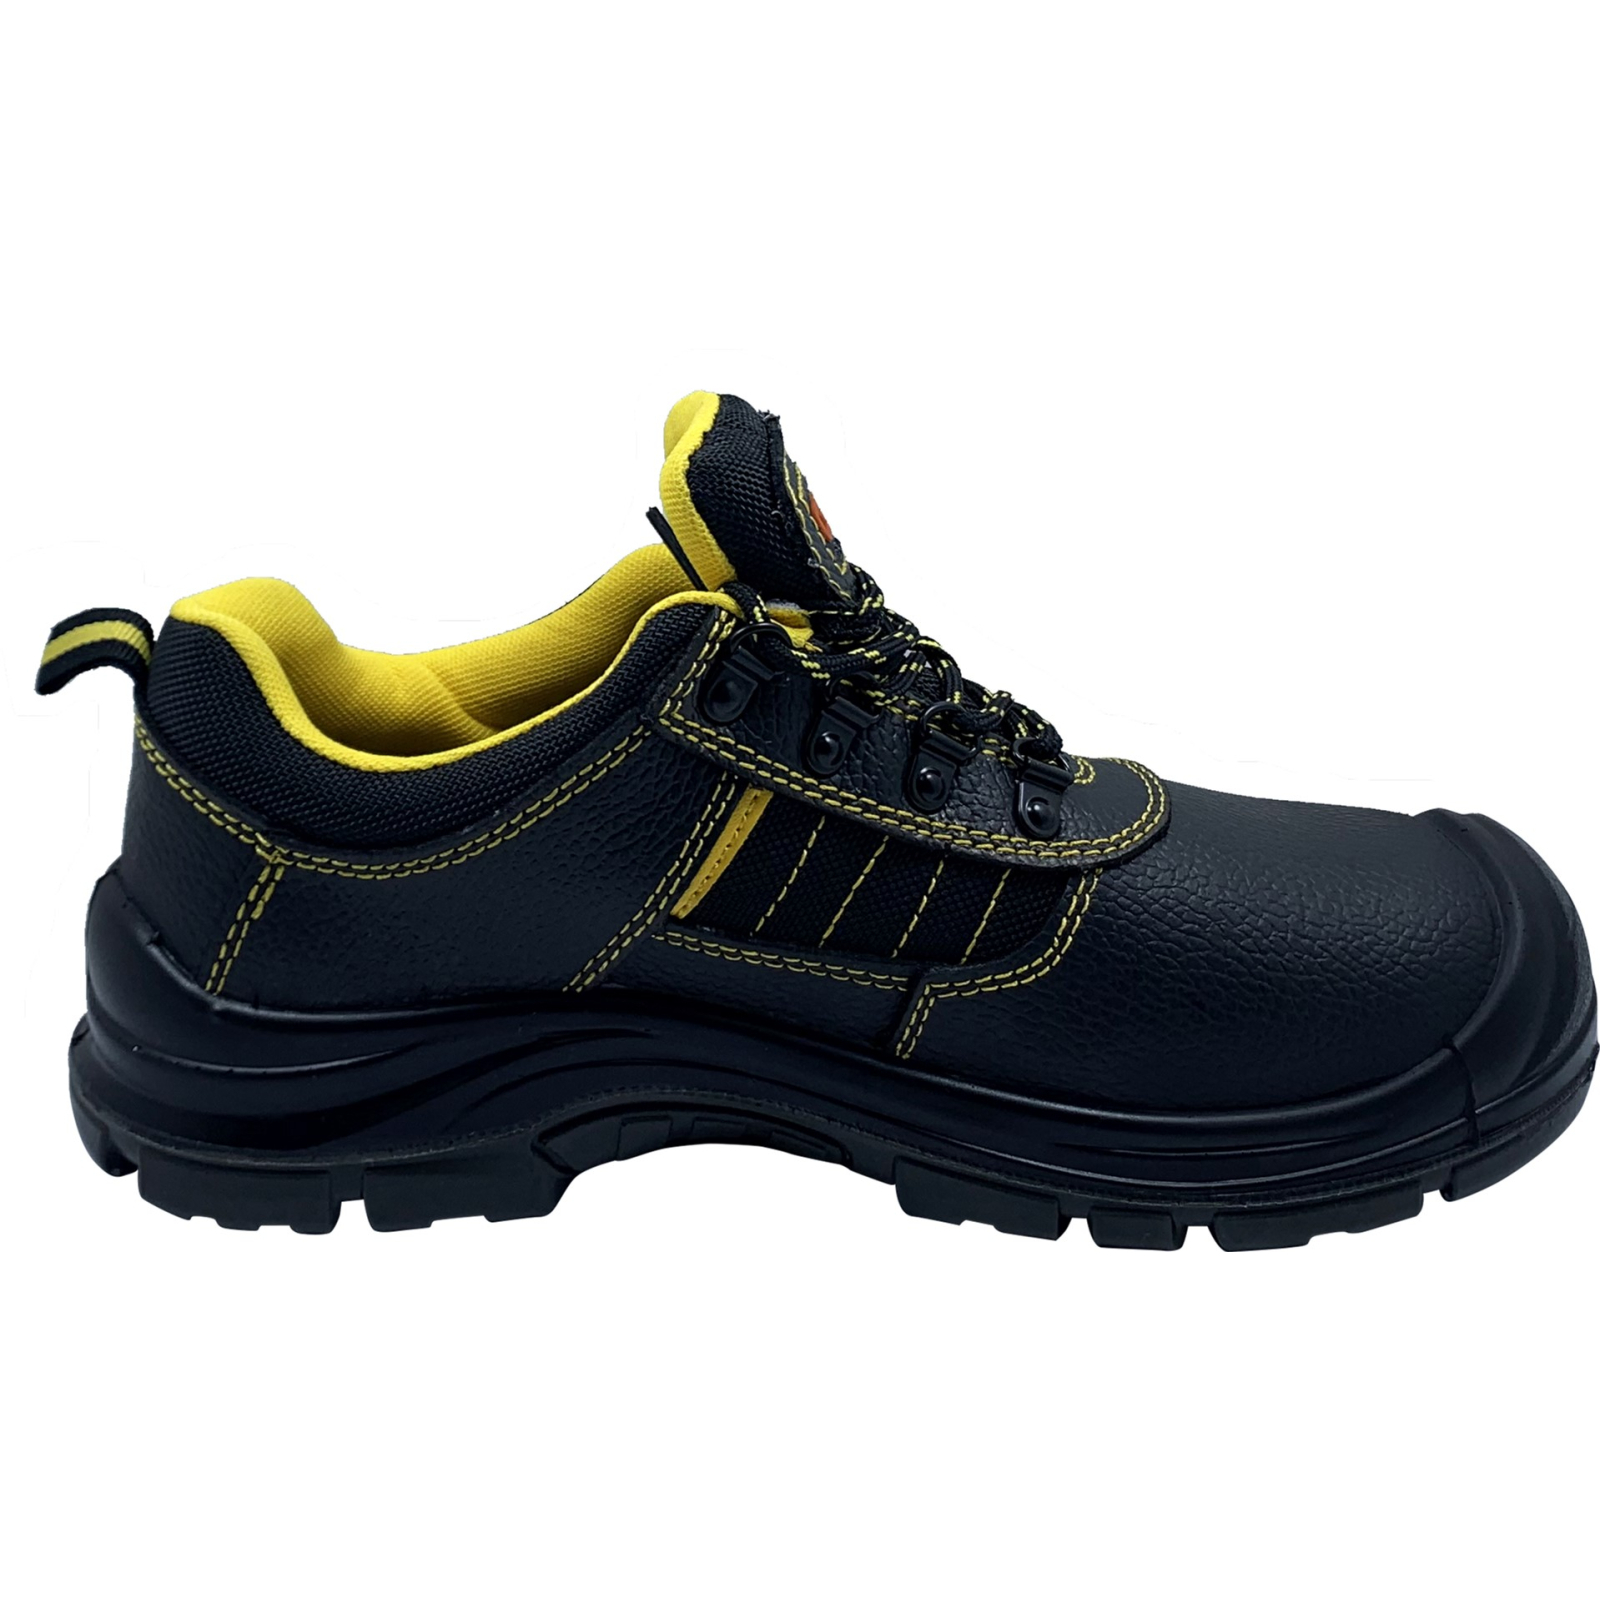 Ботинки рабочие GTM SM-078 мет. носок, р.42 с желтыми вставками (SM-078-42) изображение 2